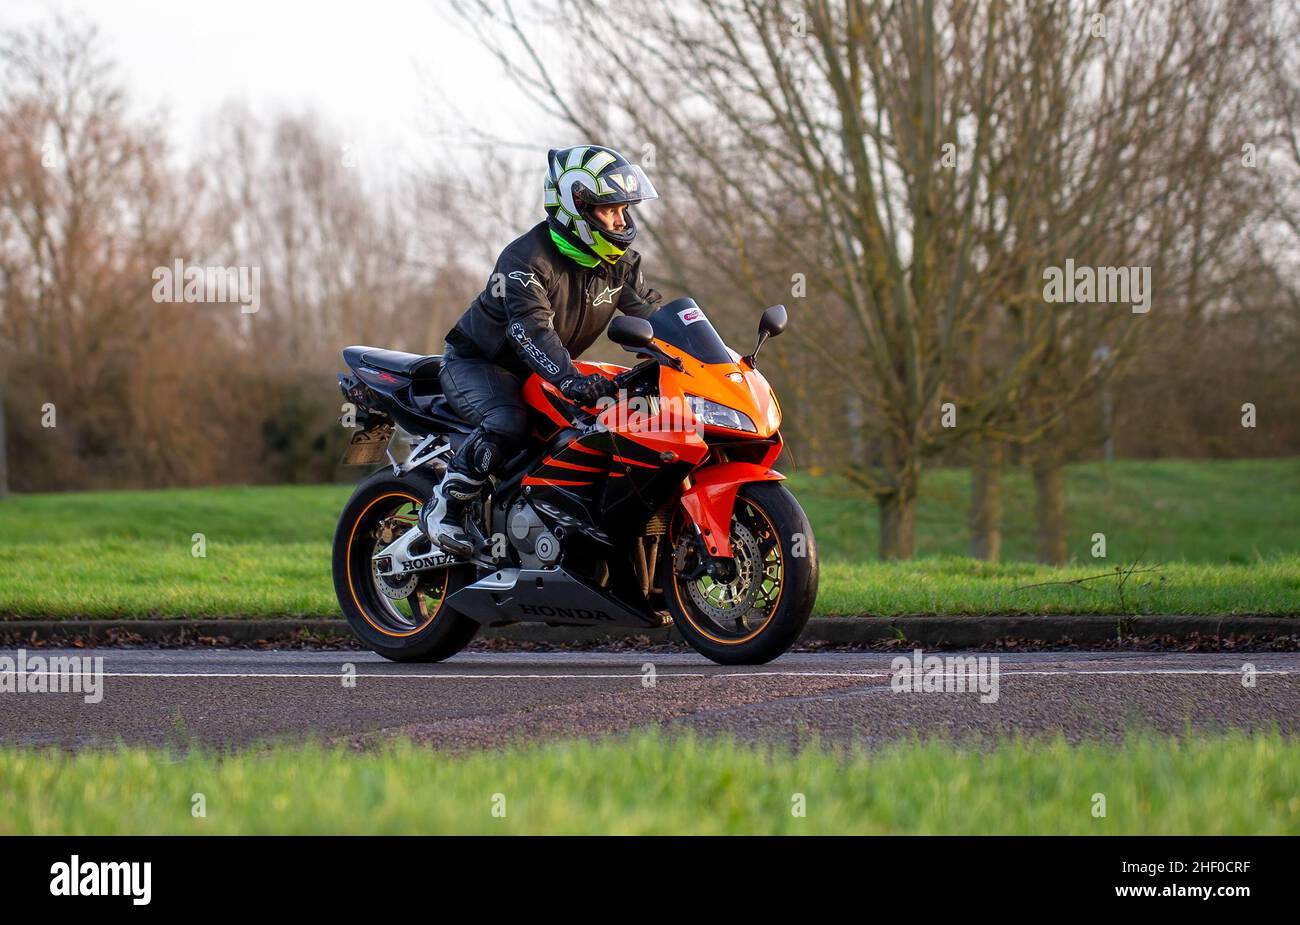 Man riding an orange Honda motorcycle Stock Photo